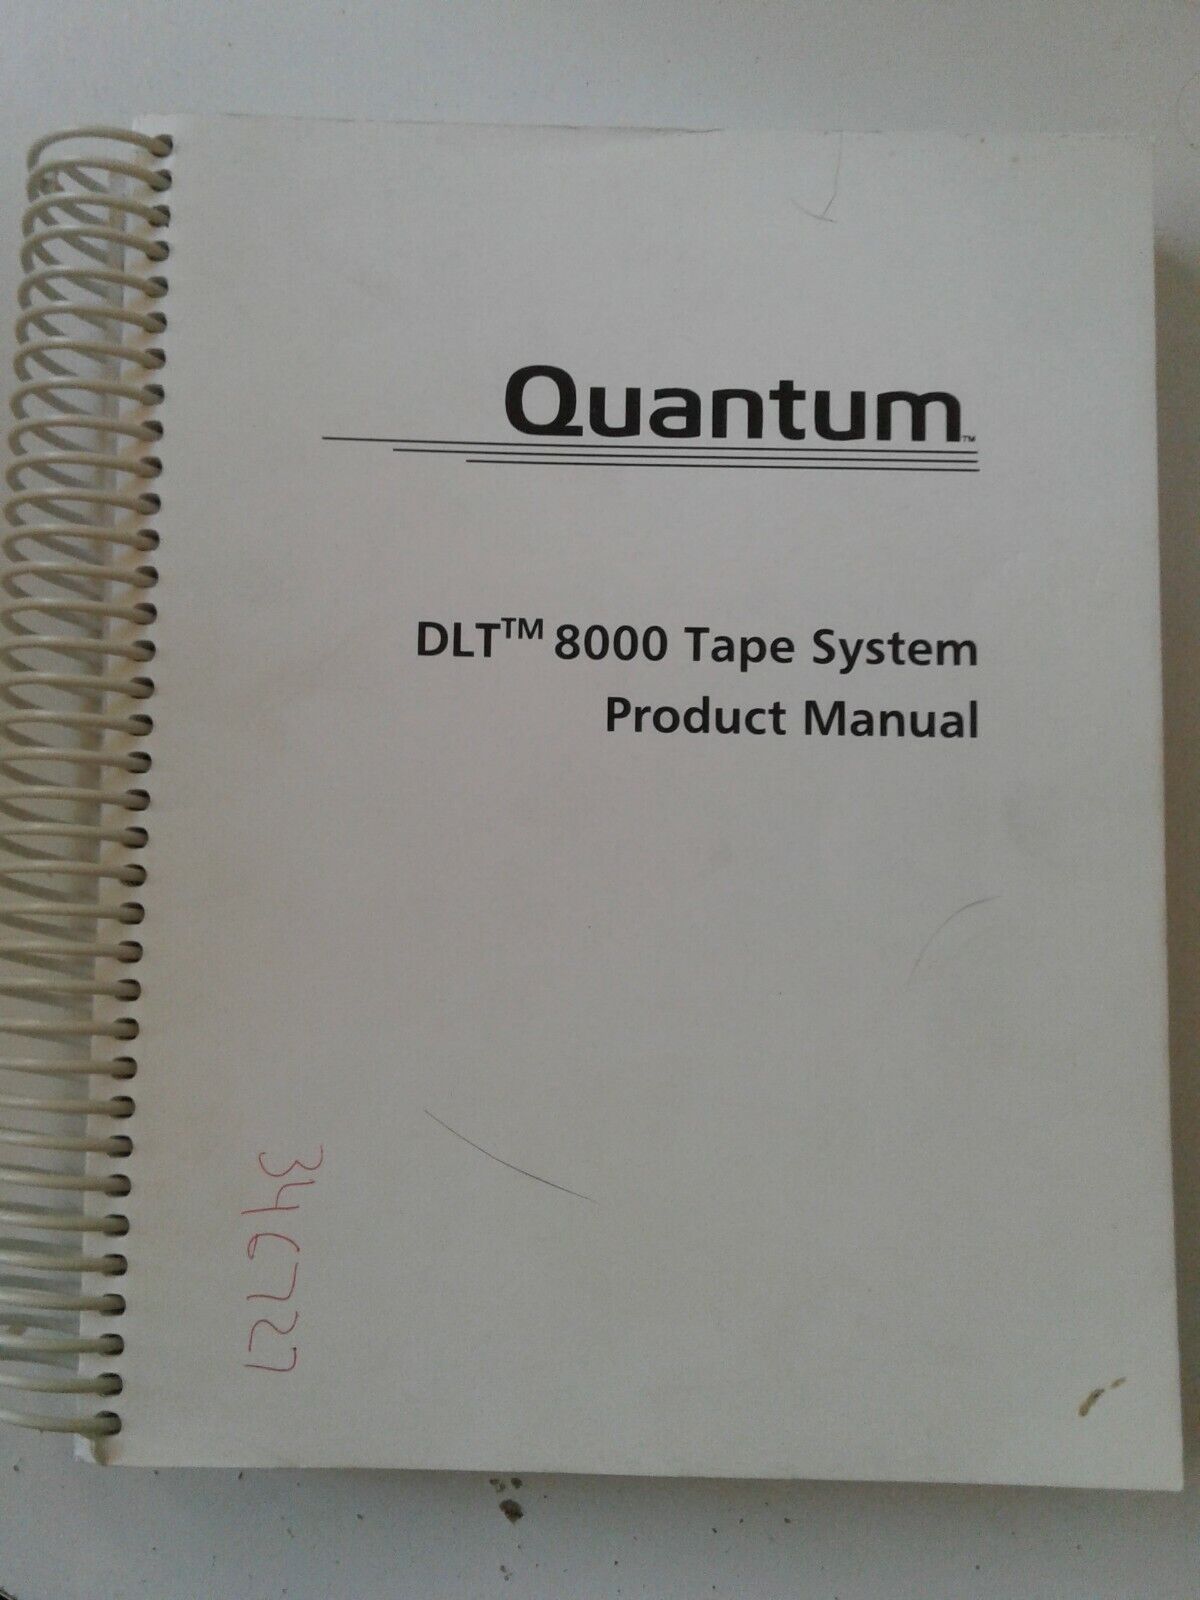 Quantum DLT 8000 Tape System Product Manual 1999